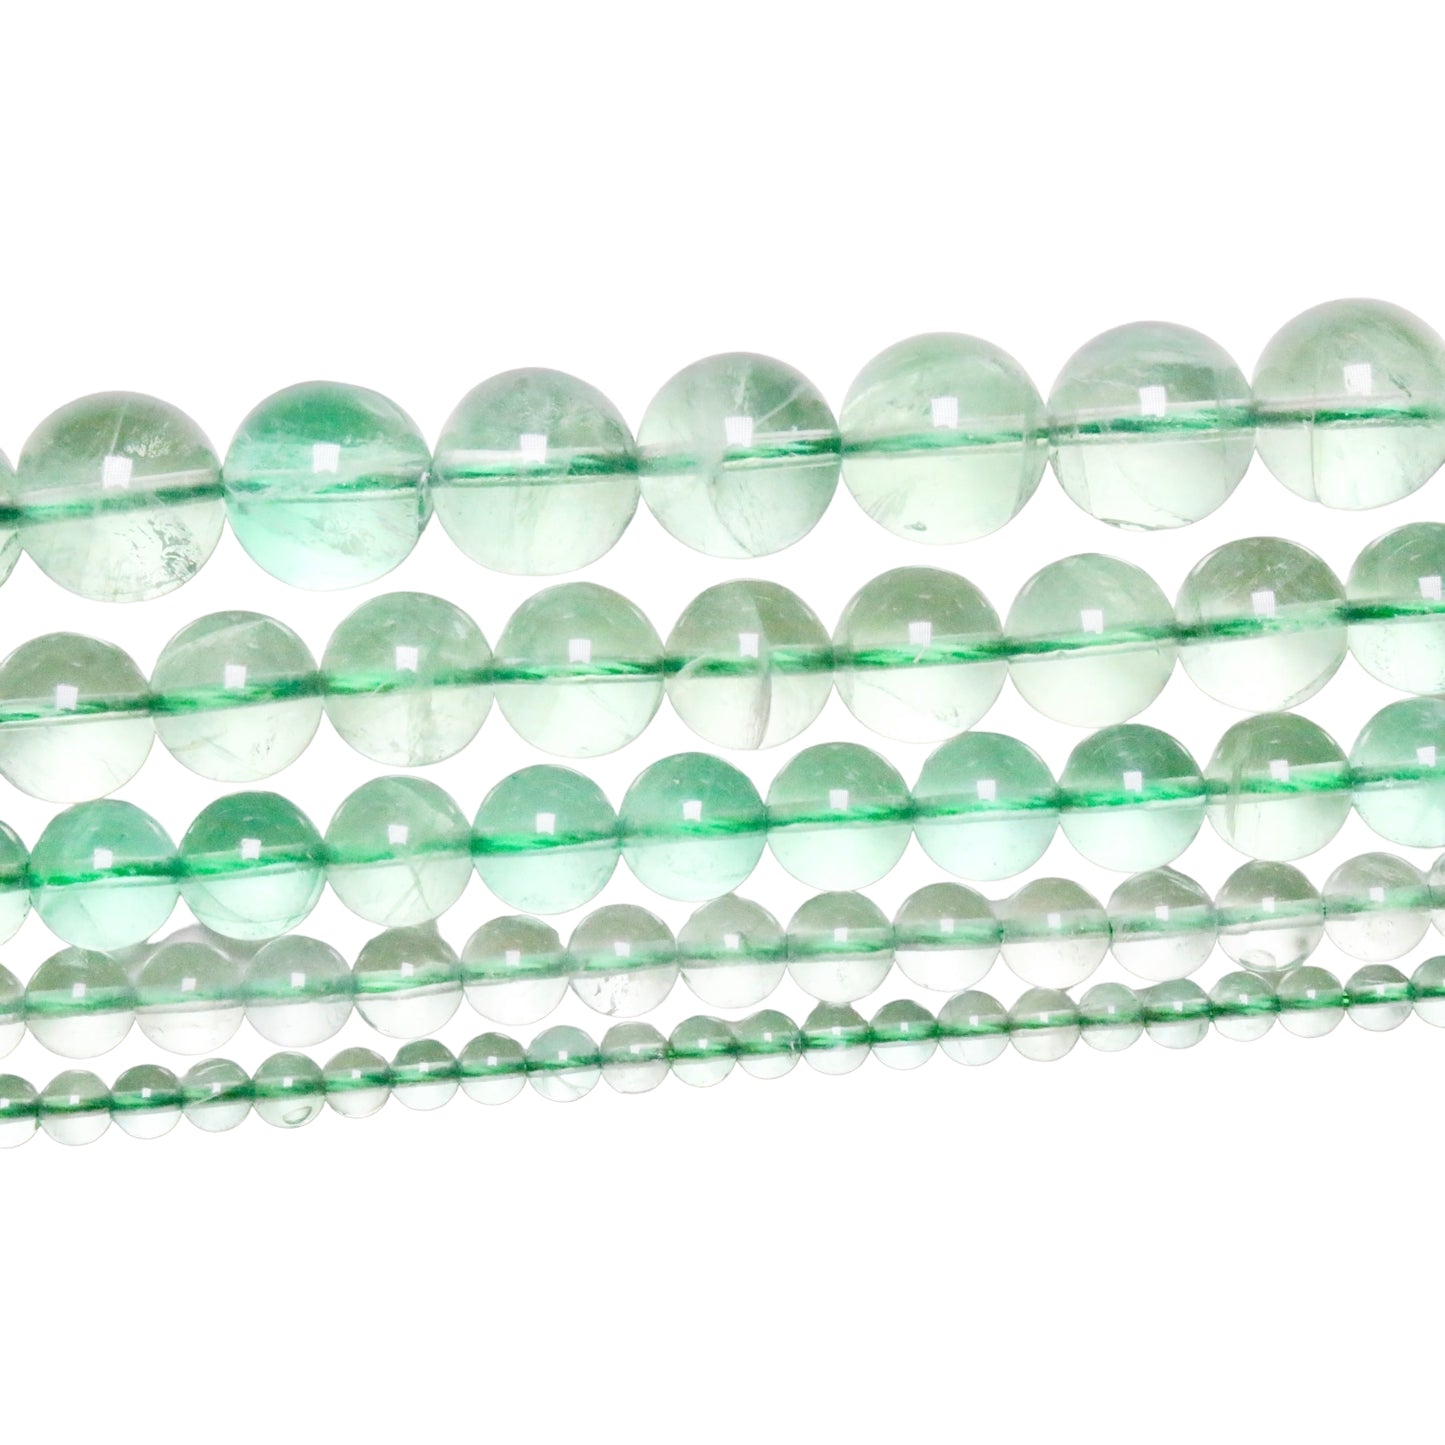 Green fluorite pearl wire